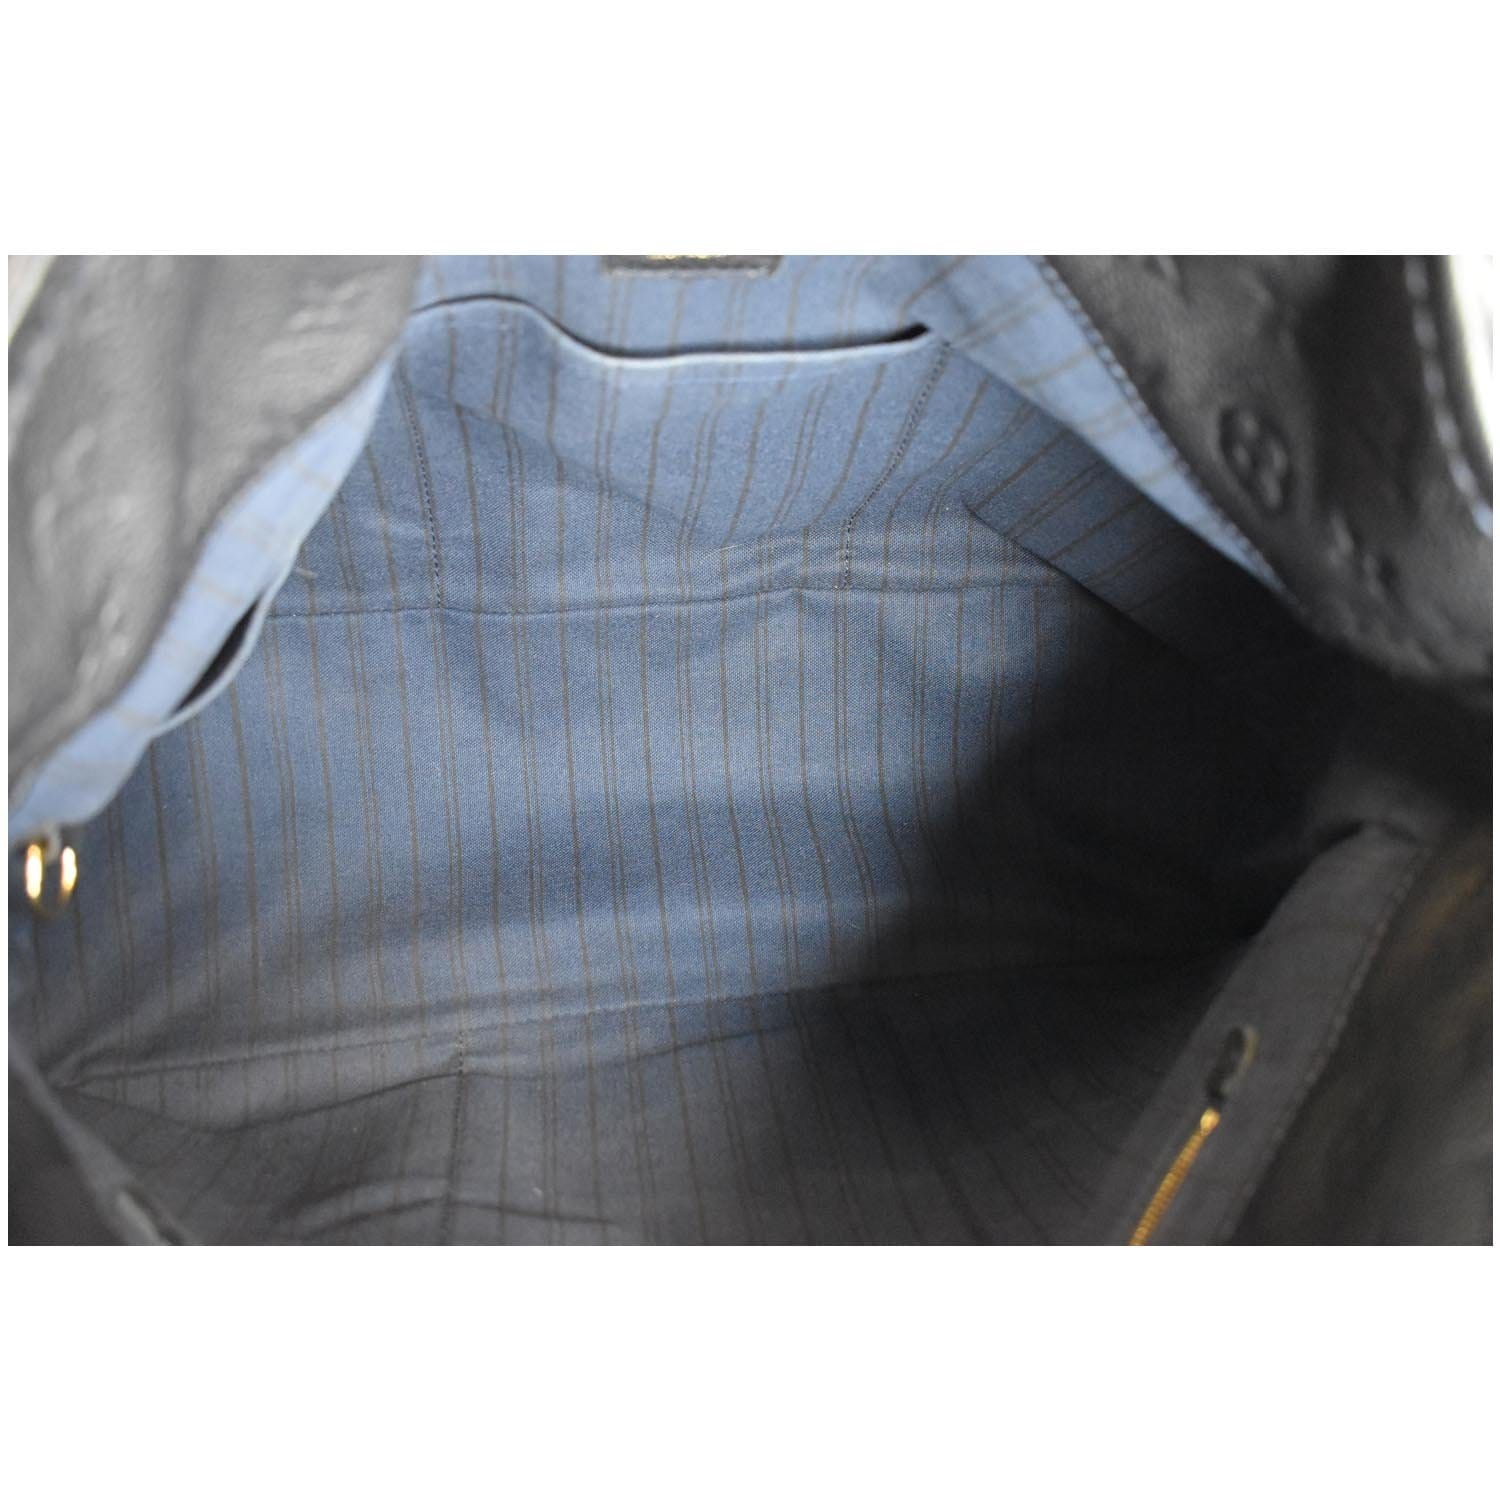 LOUIS VUITTON Artsy MM Empreinte Leather Shoulder Bag Blue-US